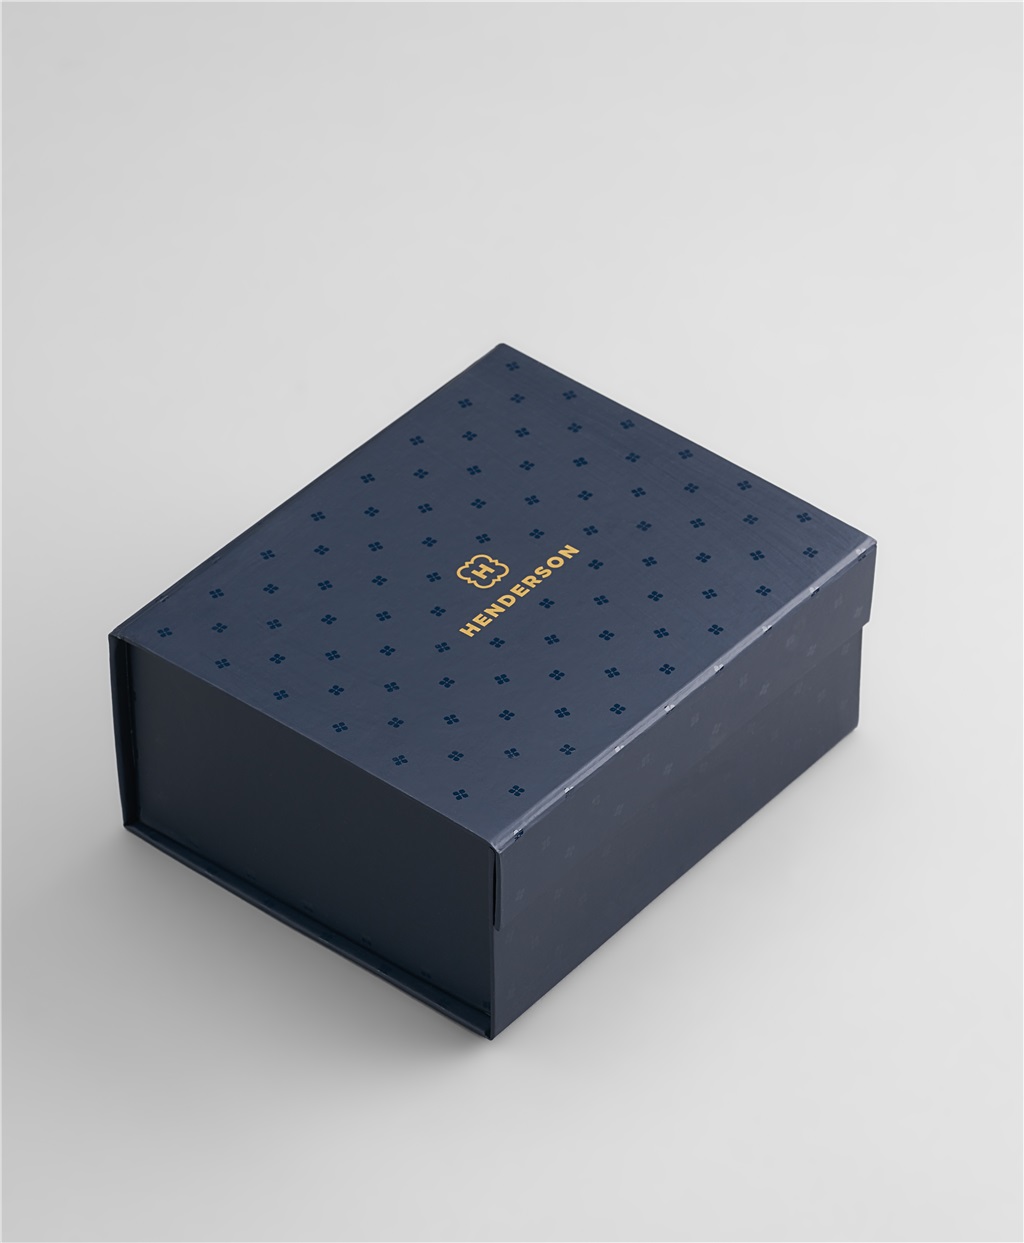 

Упаковка (16,5 x 13,5 x 7 см, BOX-0009-N